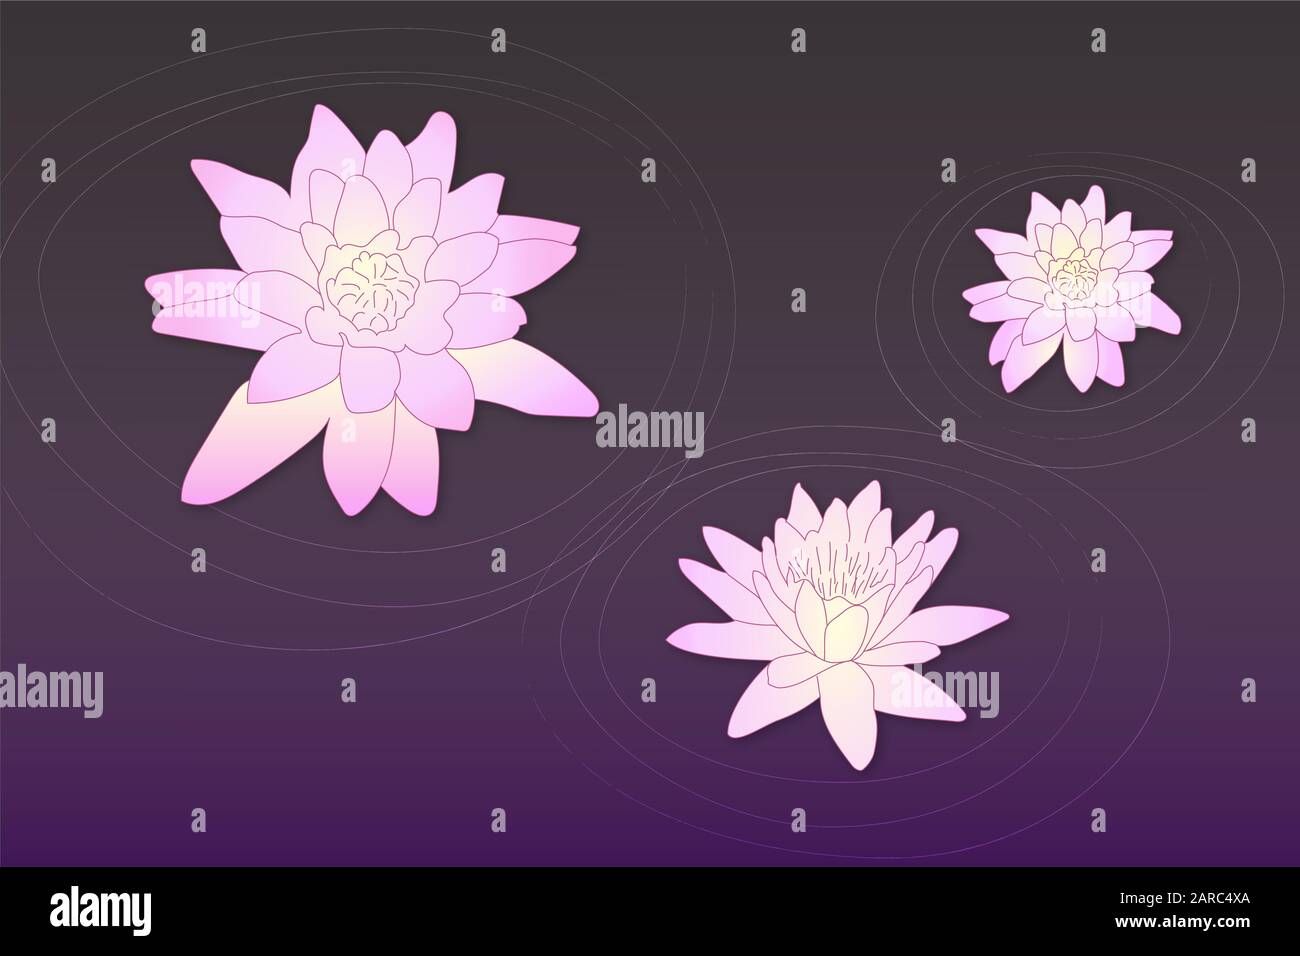 Vector Art pinkfarbene lotusblüten auf dunkelviolettem Wasser mit Kreishintergrund. Ruhige romantische, niedliche Blumen in der Teichzeichnung. Stock Vektor